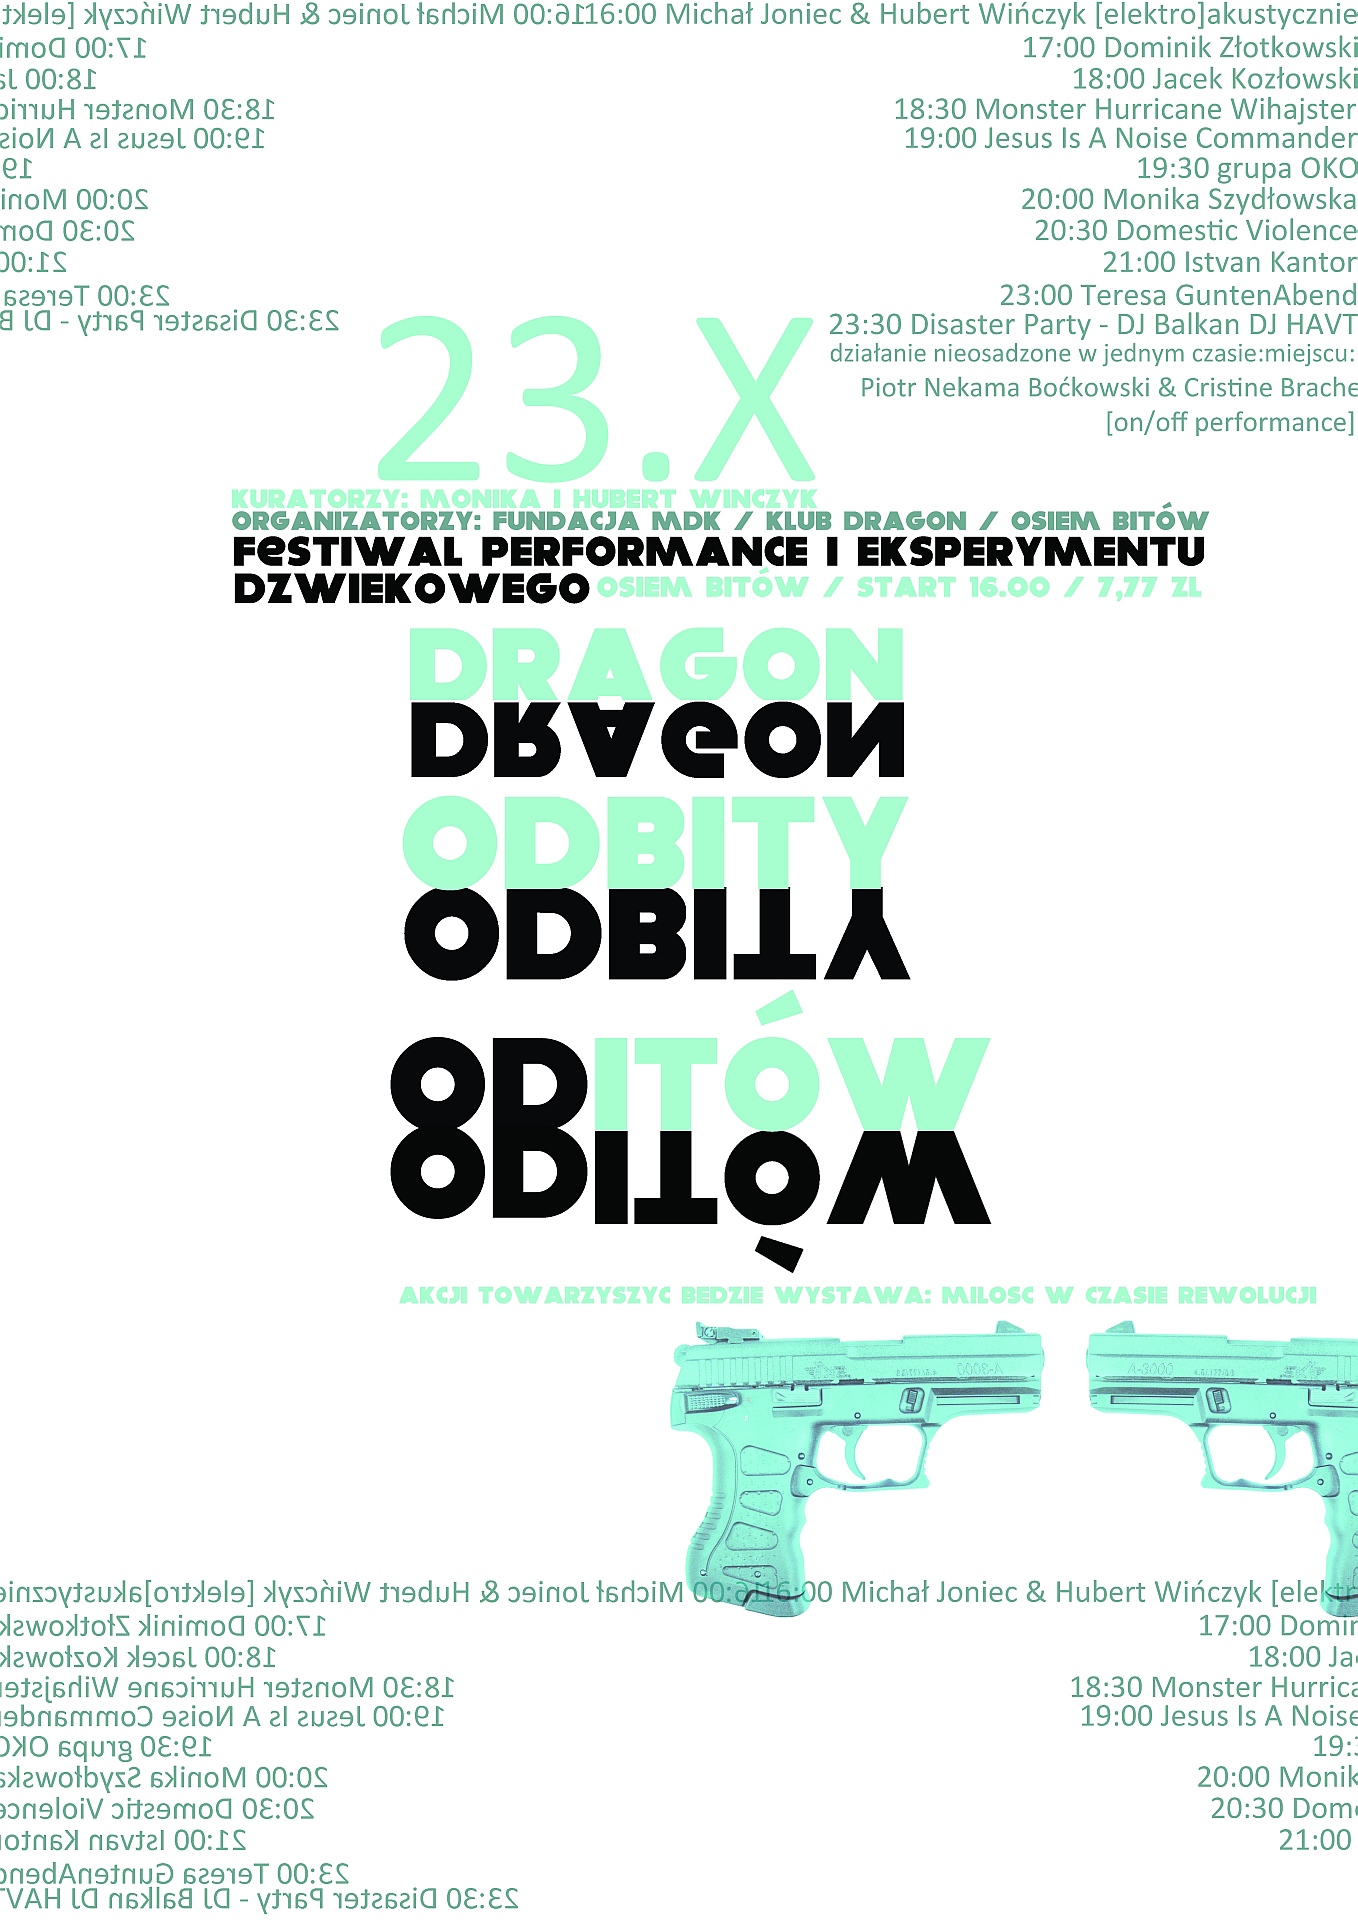 Plakat promujący pierwszą edycję festiwalu Dragon Odbity (źródło: materiały prasowe)